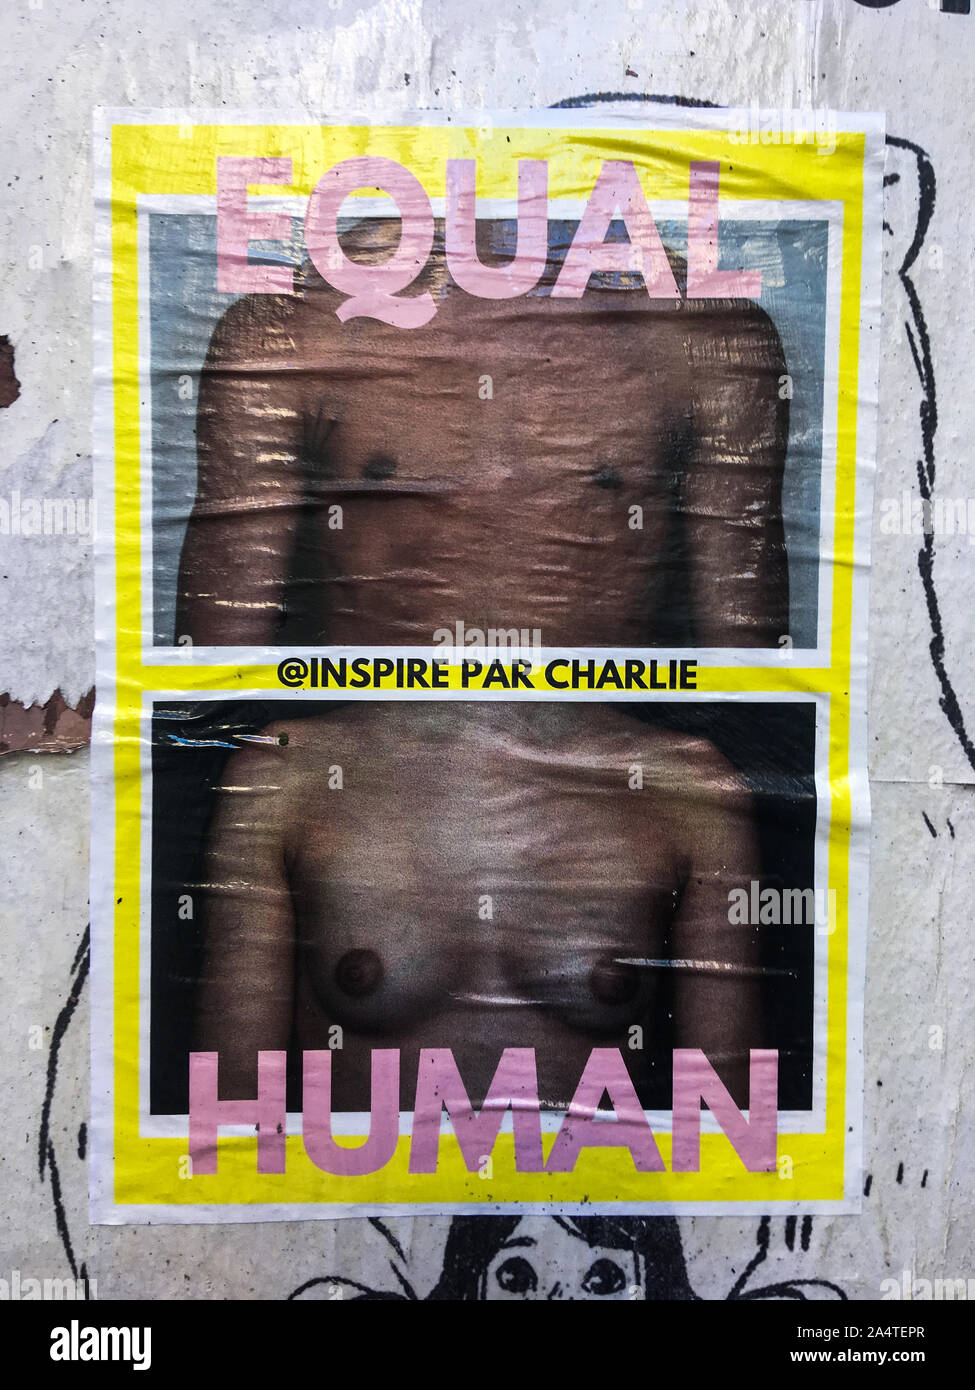 Feminist poster, Lyon, France Stock Photo